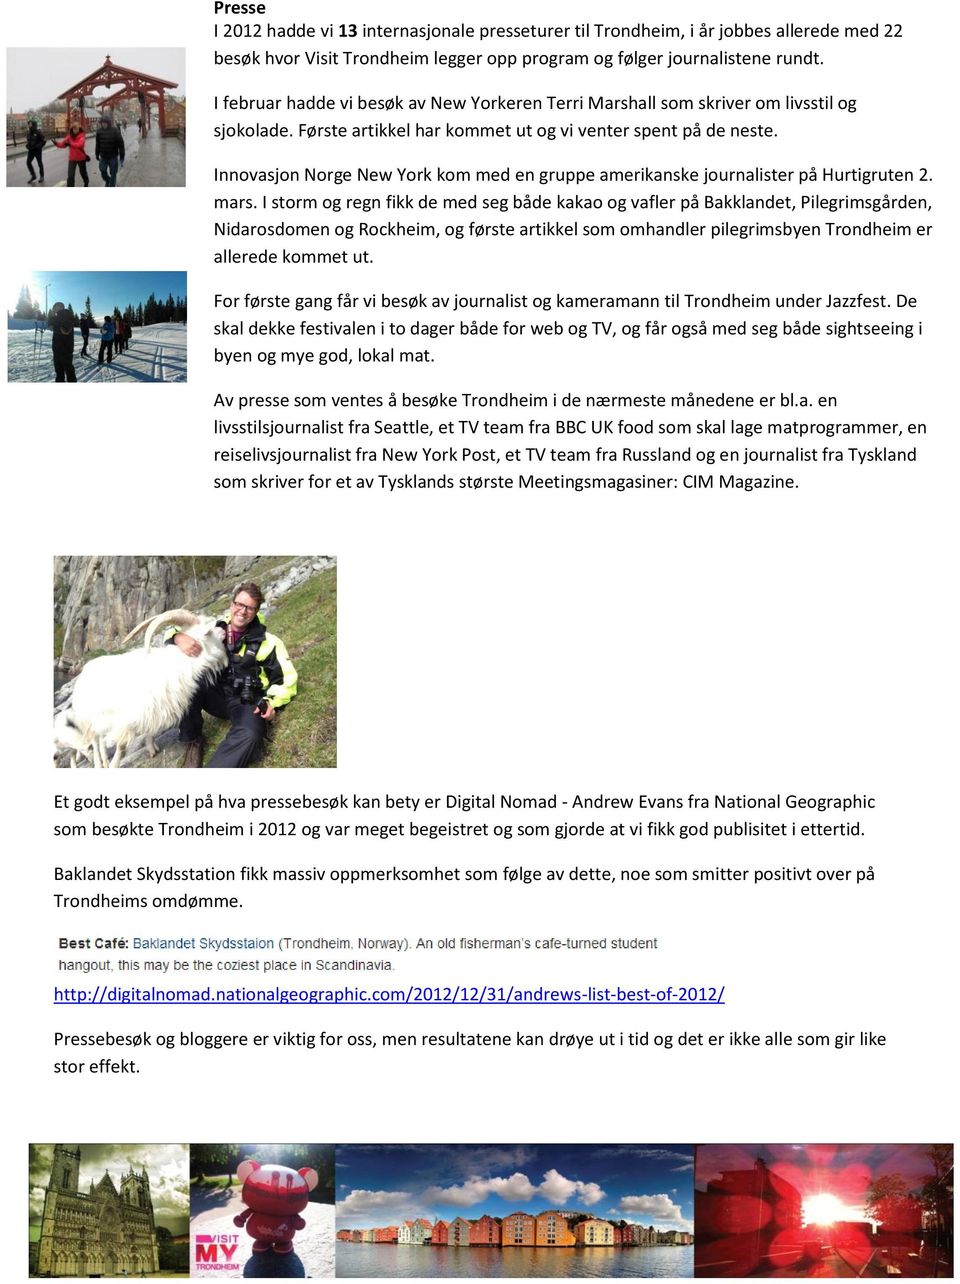 Innovasjon Norge New York kom med en gruppe amerikanske journalister på Hurtigruten 2. mars.